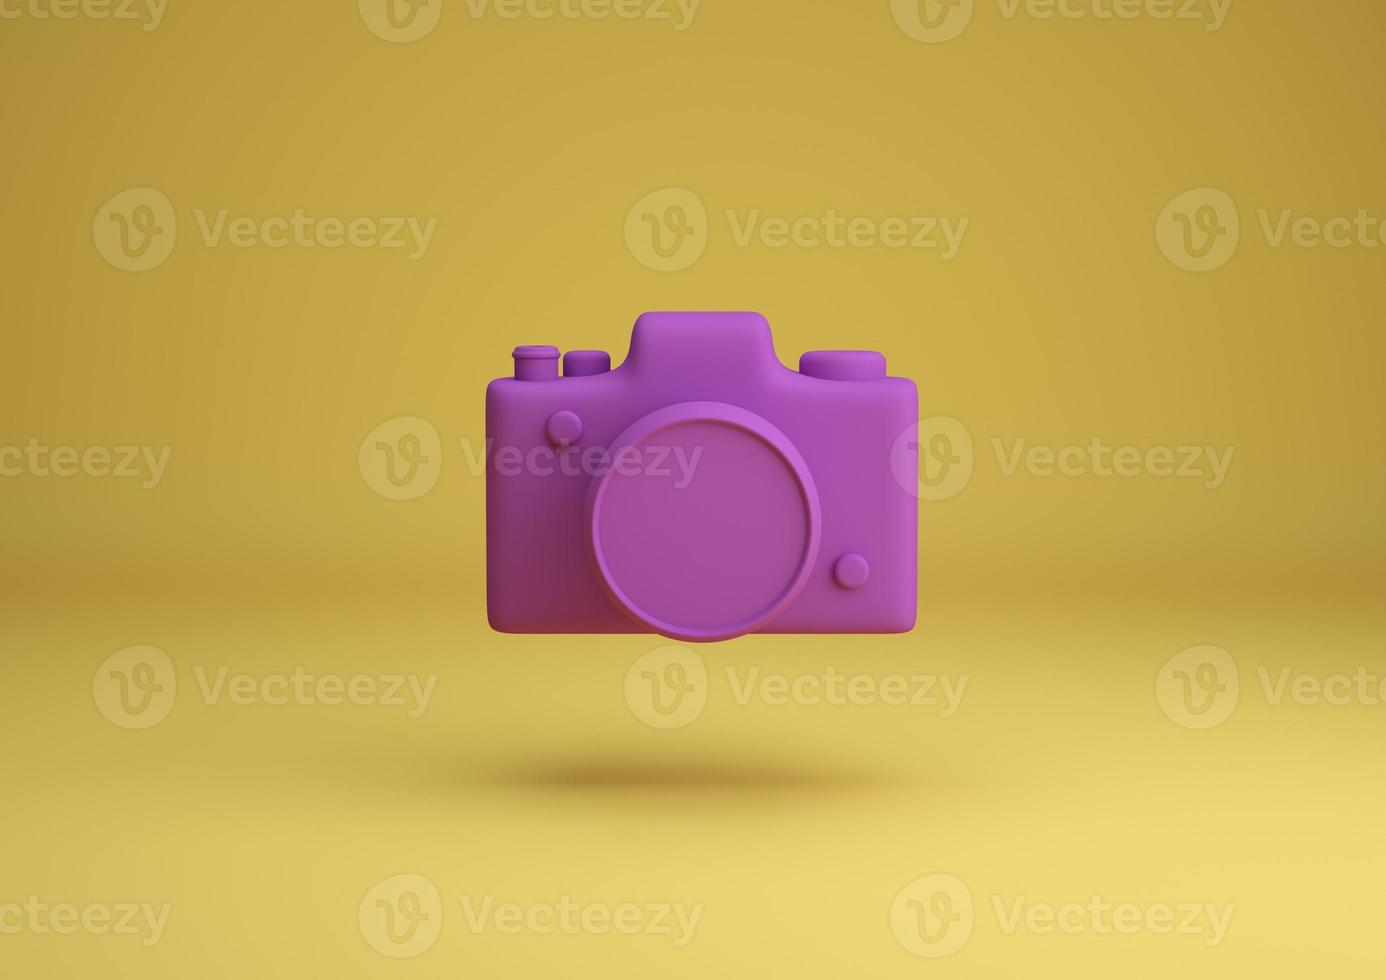 câmera rosa na ilustração de renderização 3d de fundo amarelo foto